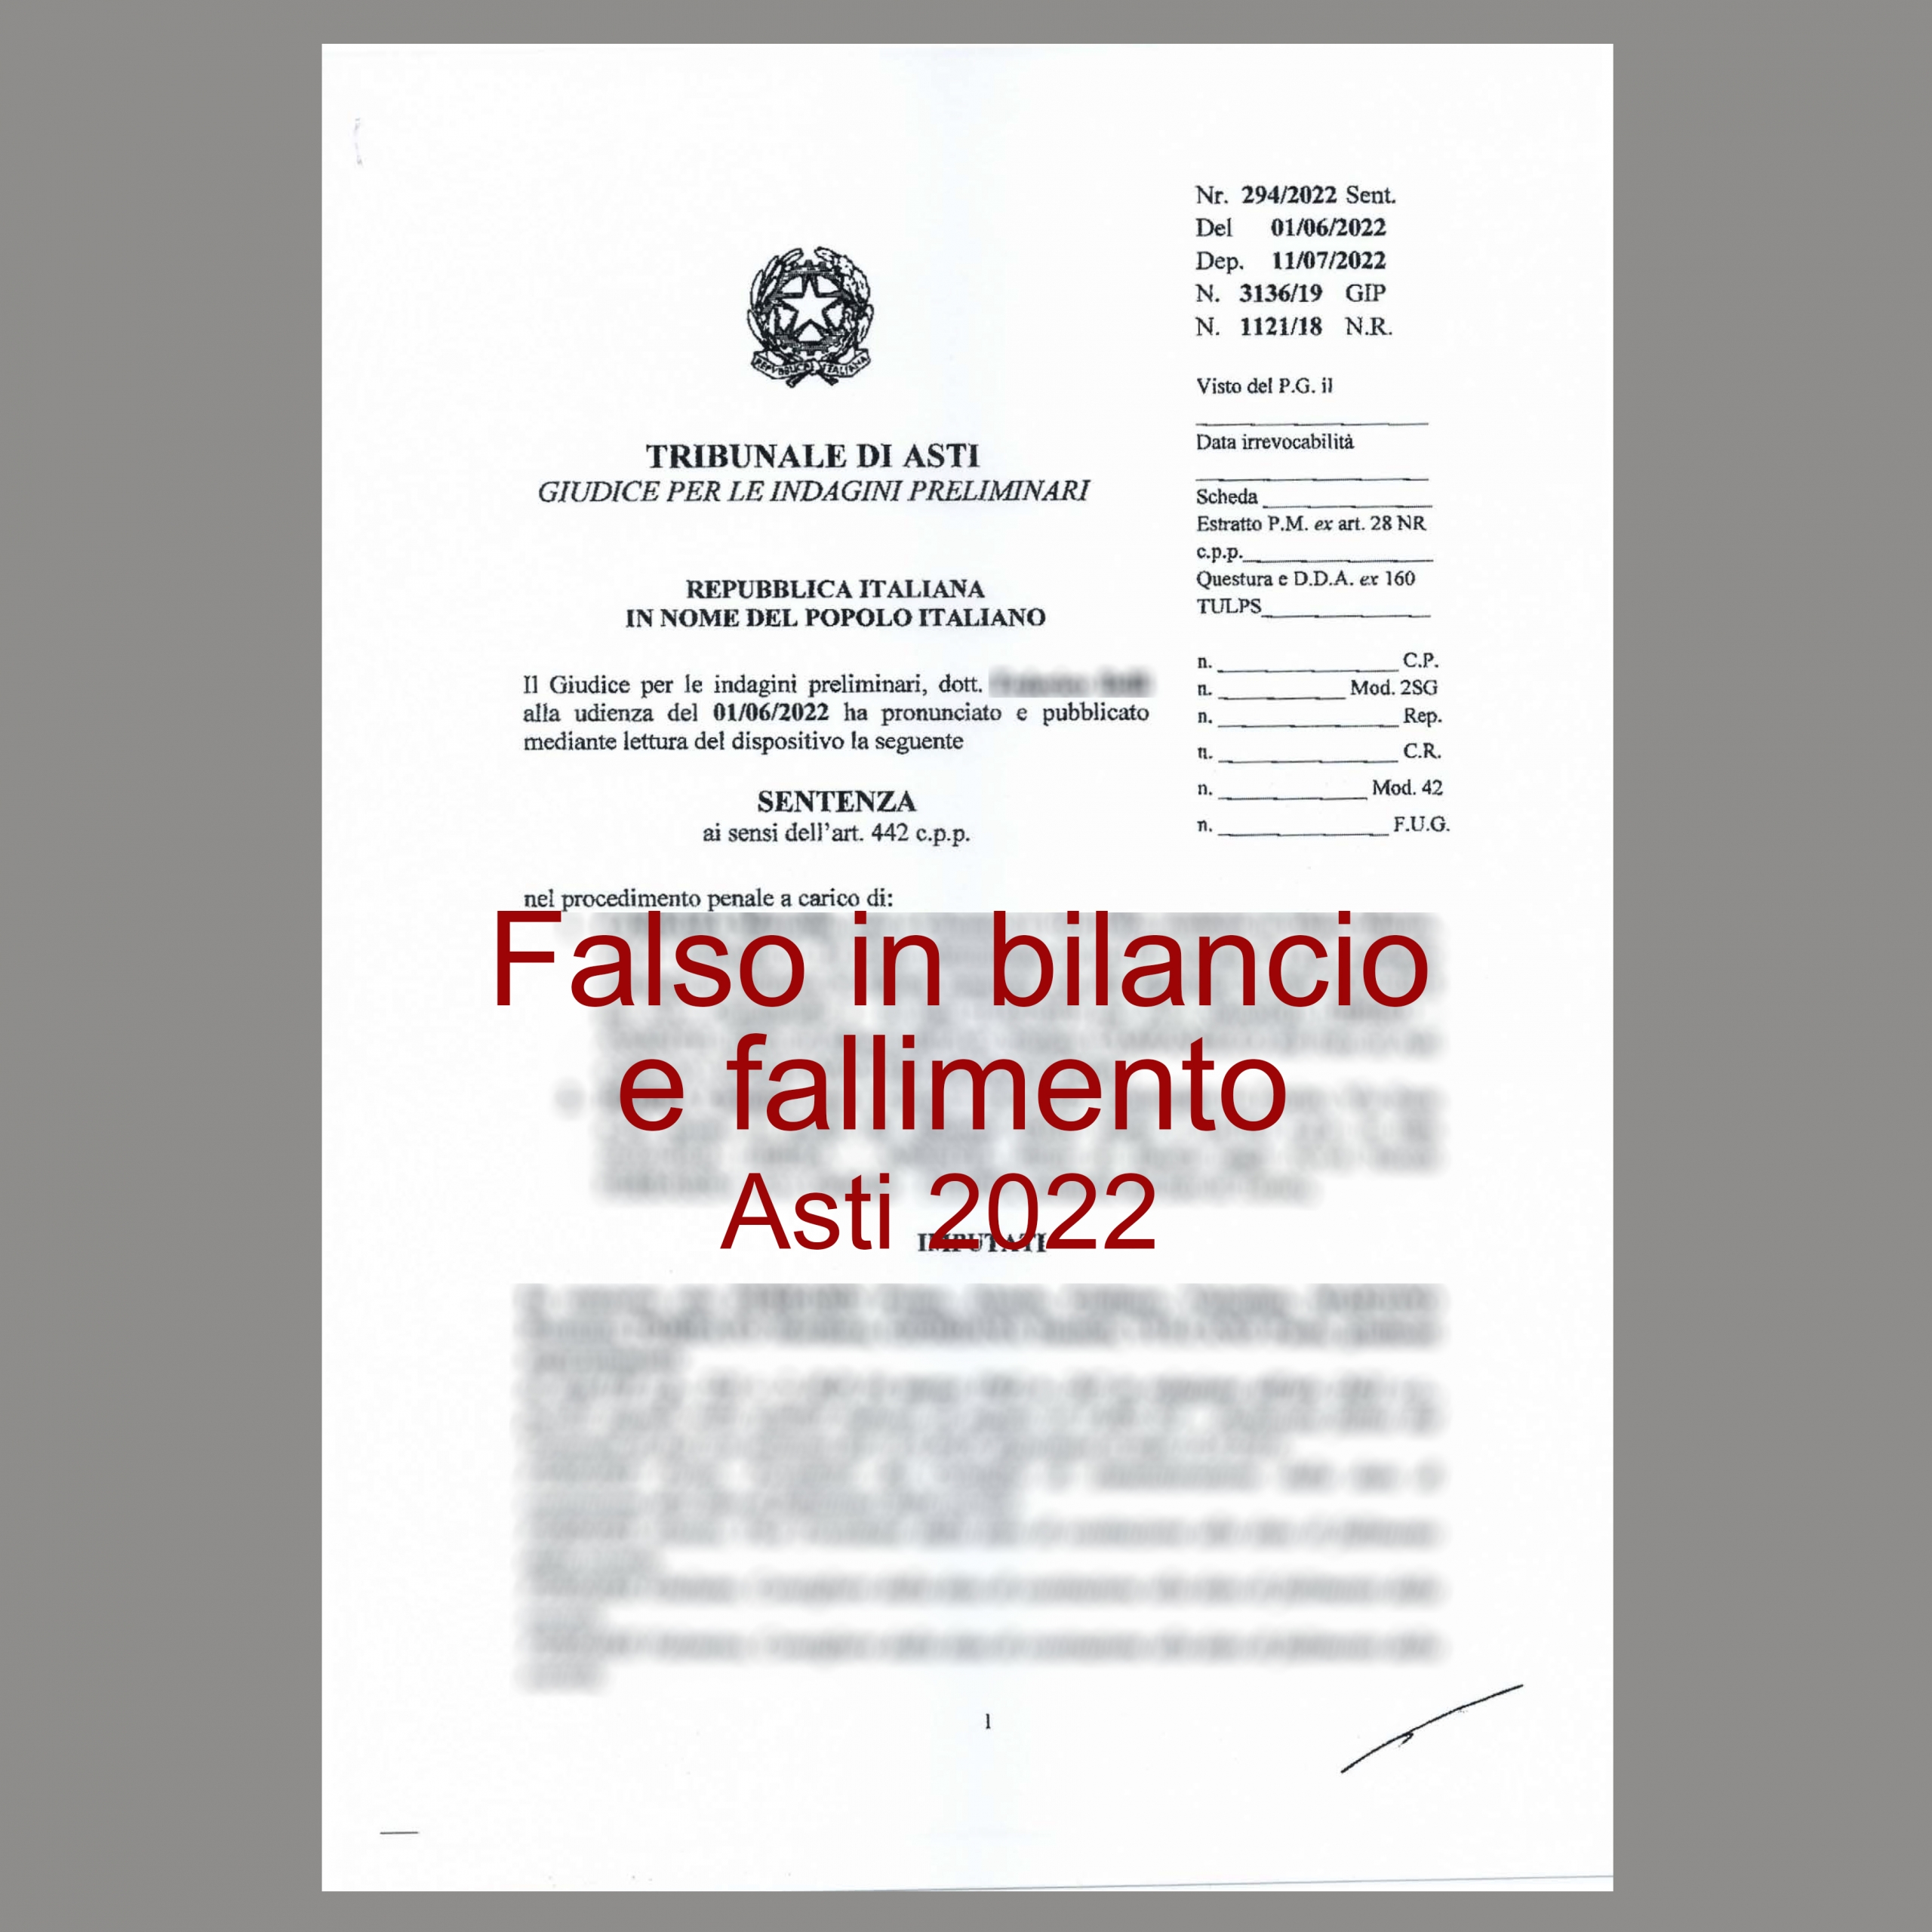 12_Falso in bilancio di sindaco e fallimento - Asti 2022